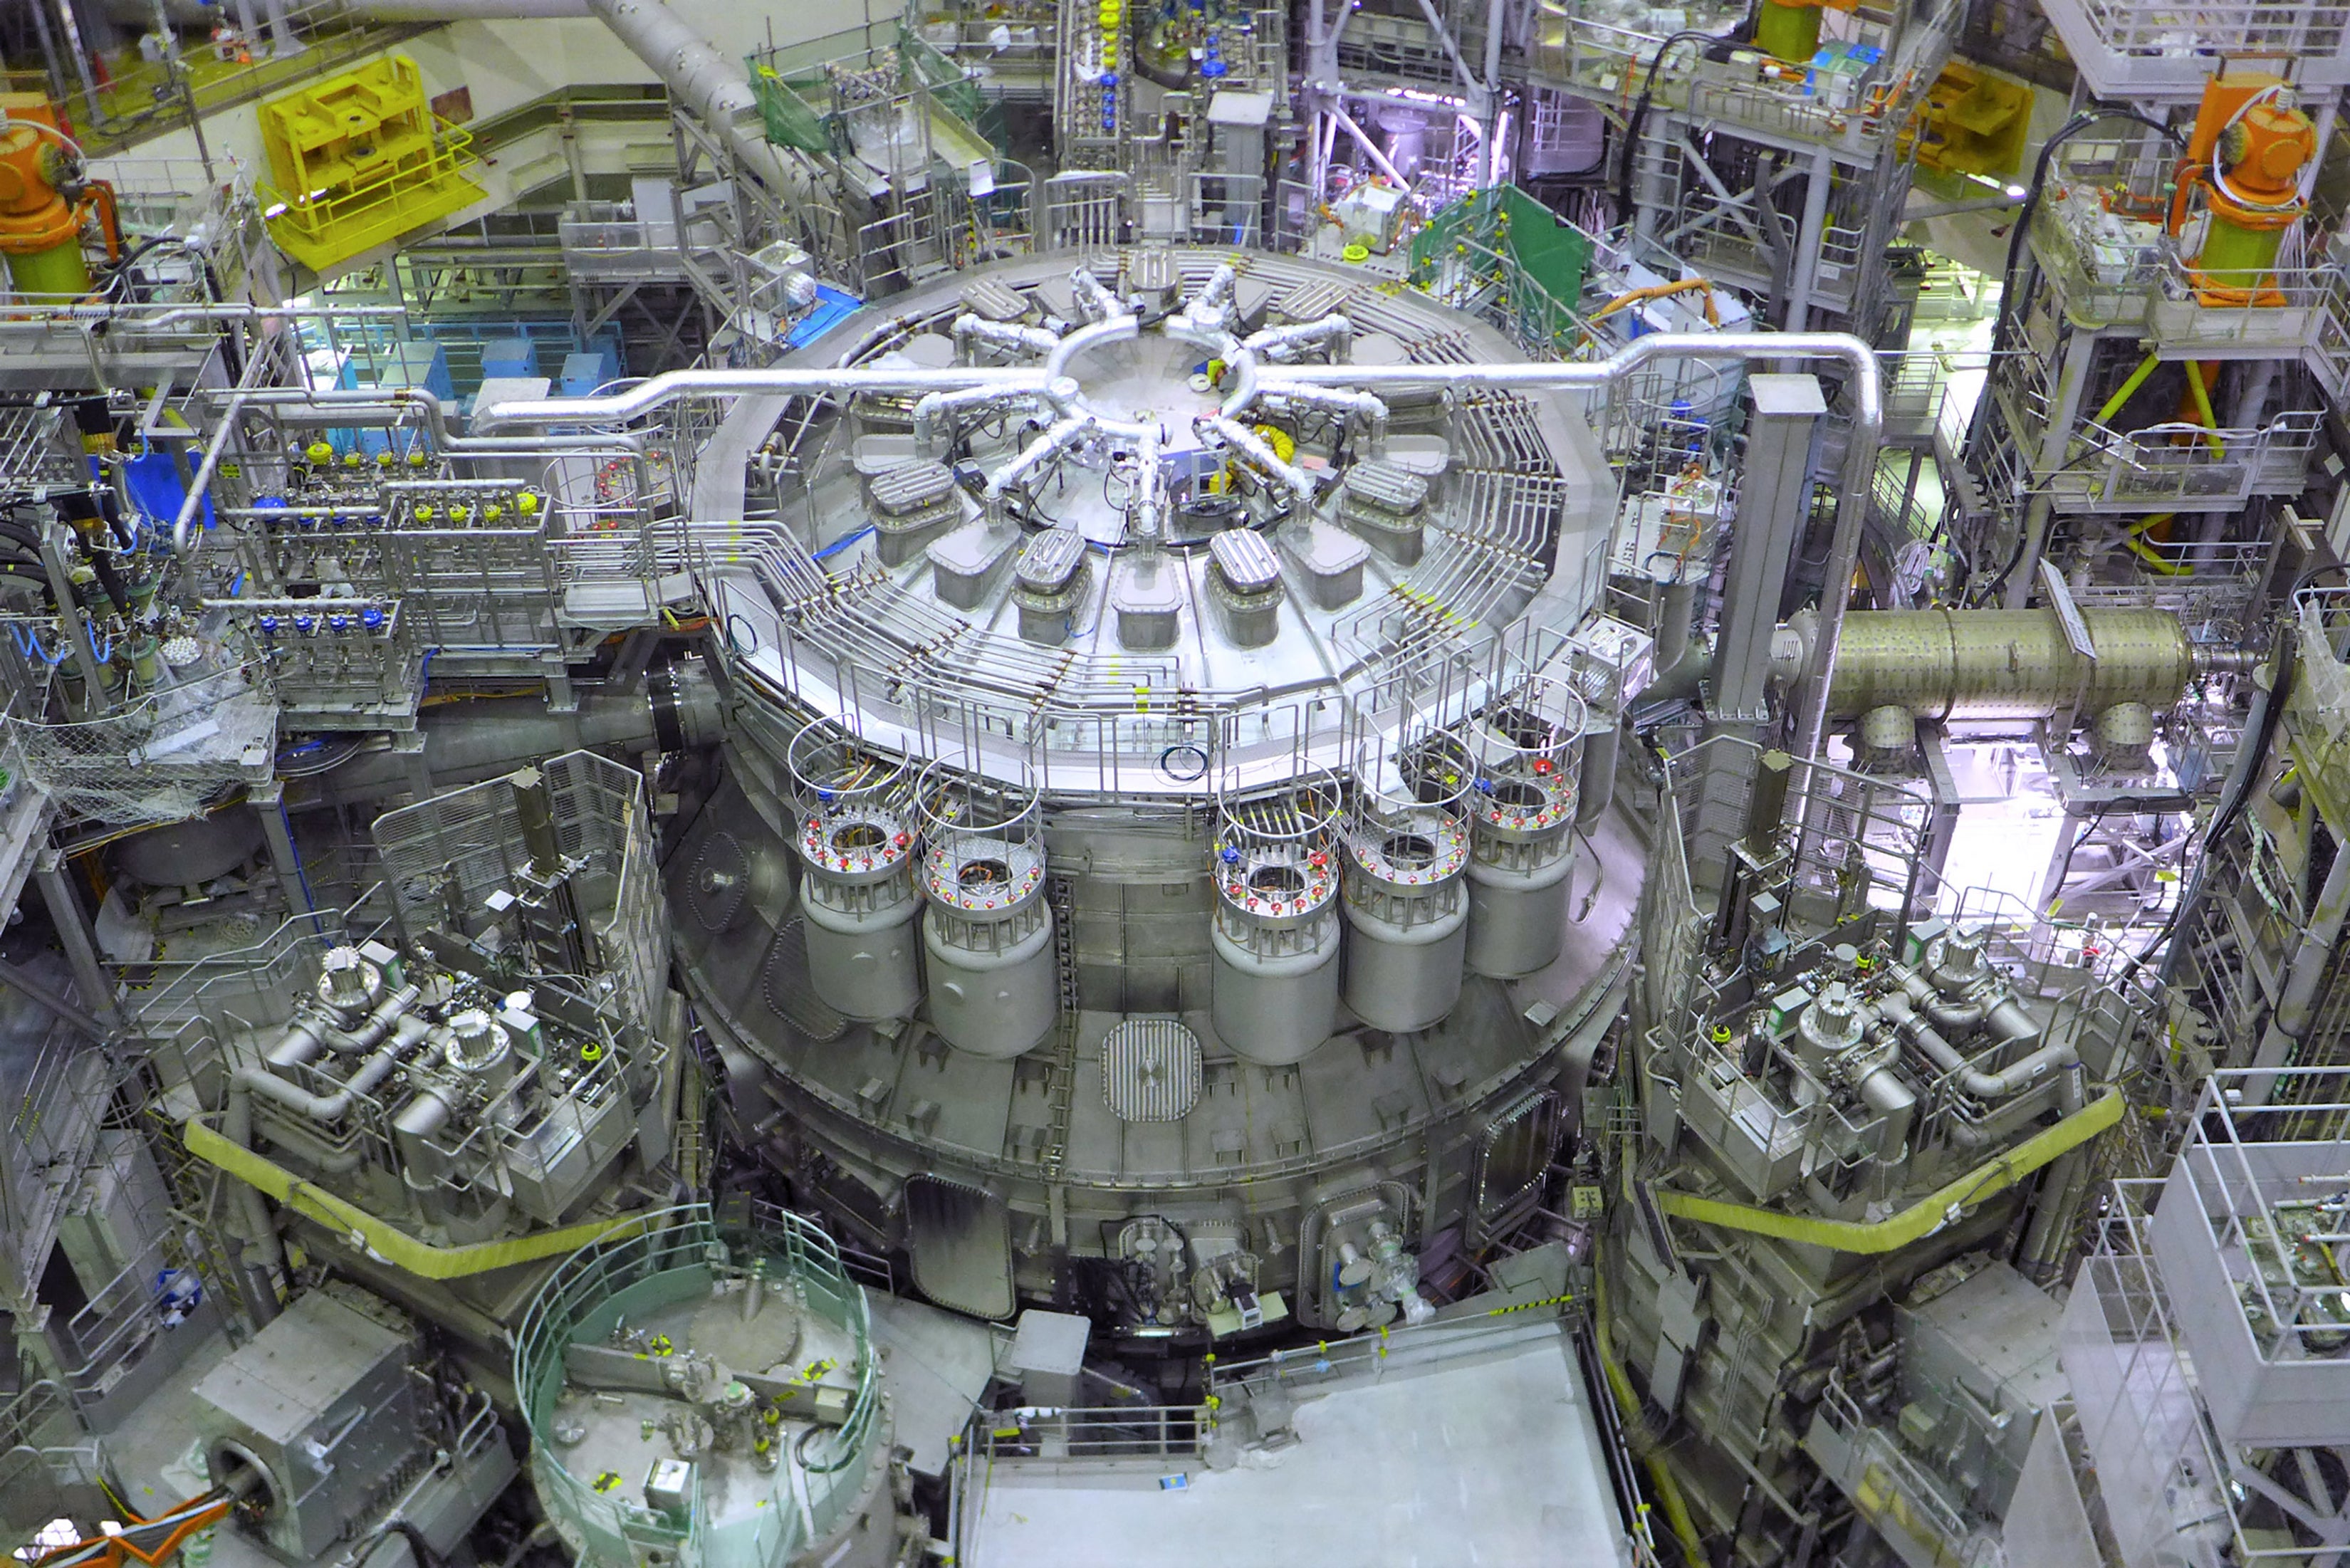 El JT-60SA es el reactor de fusión nuclear más grande del mundo construido hasta la fecha